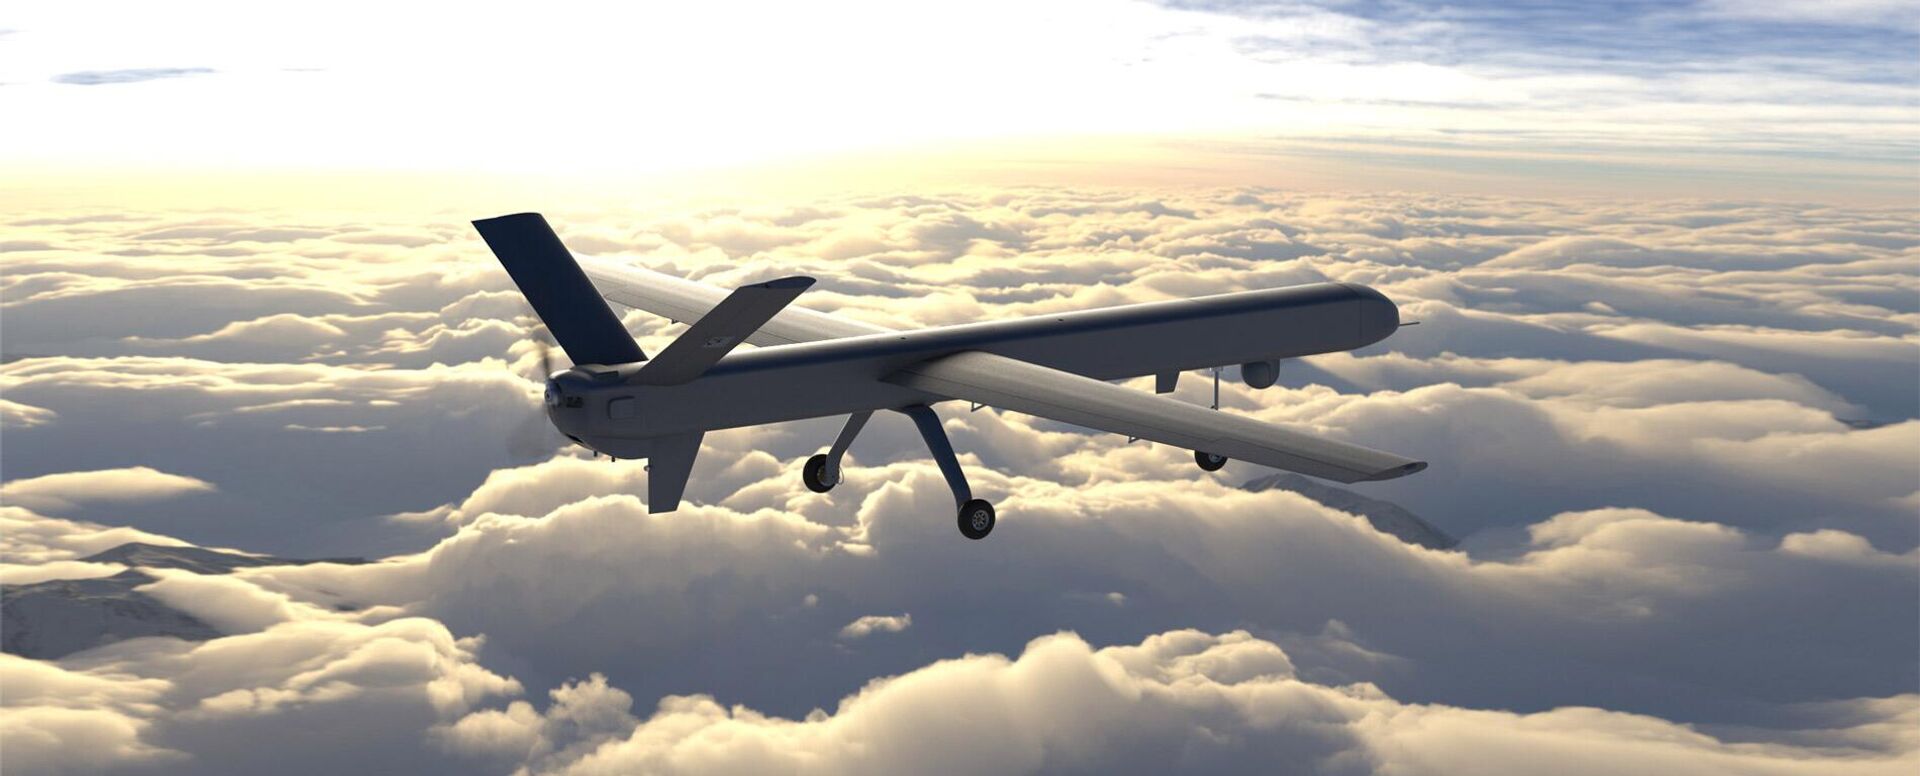 O drone kamikaze Atobá promete ser o maior já produzido na América Latina, e deverá contar com munições vagantes, informa o jornal - Sputnik Brasil, 1920, 08.02.2023